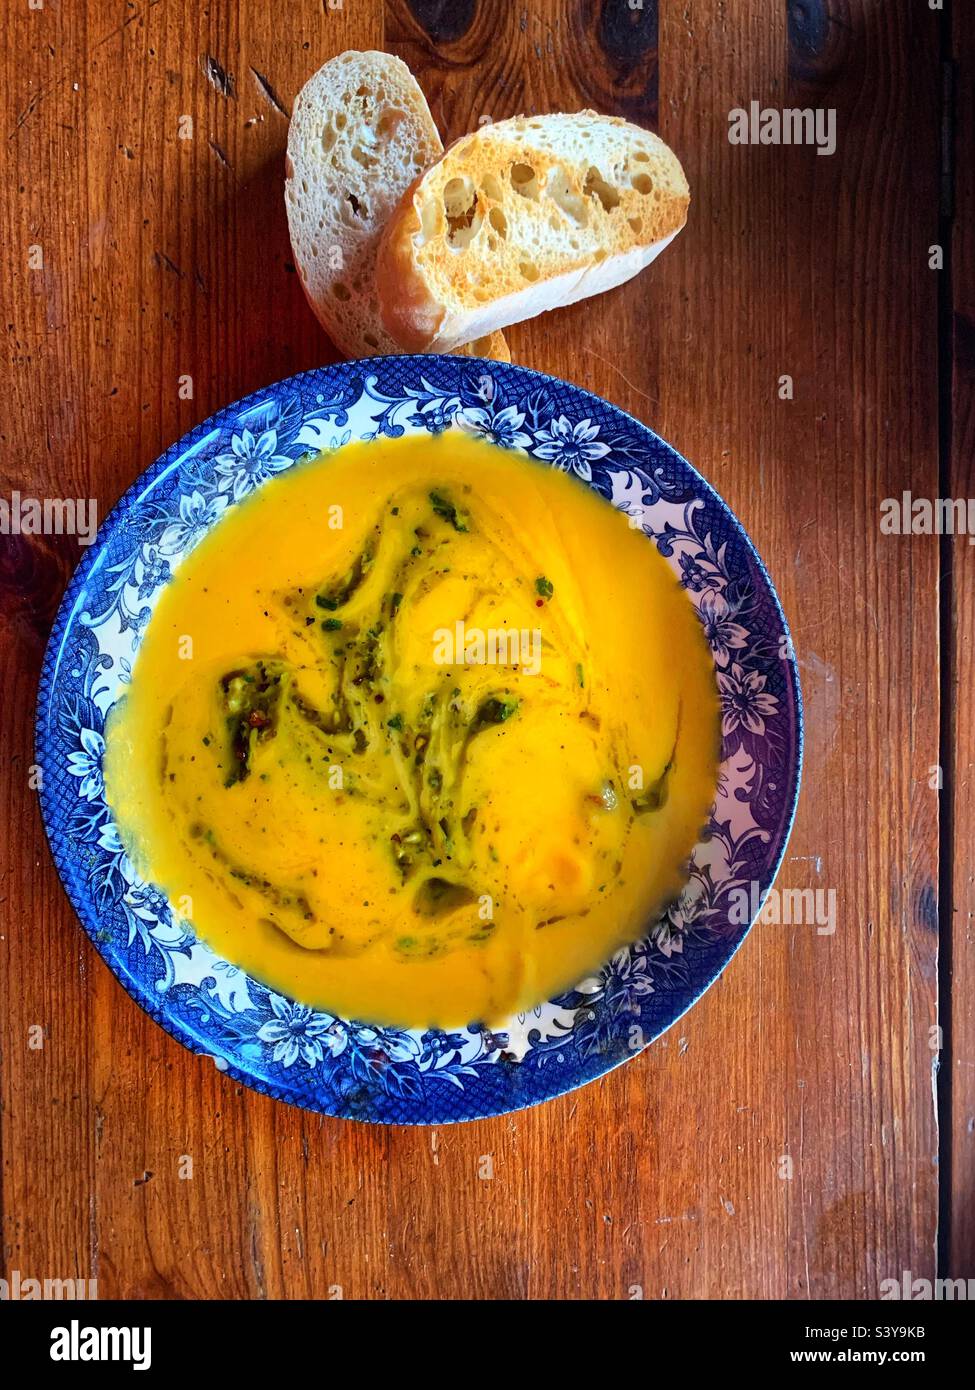 Zuppa di zucca fatta in casa con noci tritate, olio d'oliva, pesto al basilico, coriandolo fresco e 2 due fette di ciabatta tostata su un tavolo di legno Foto Stock